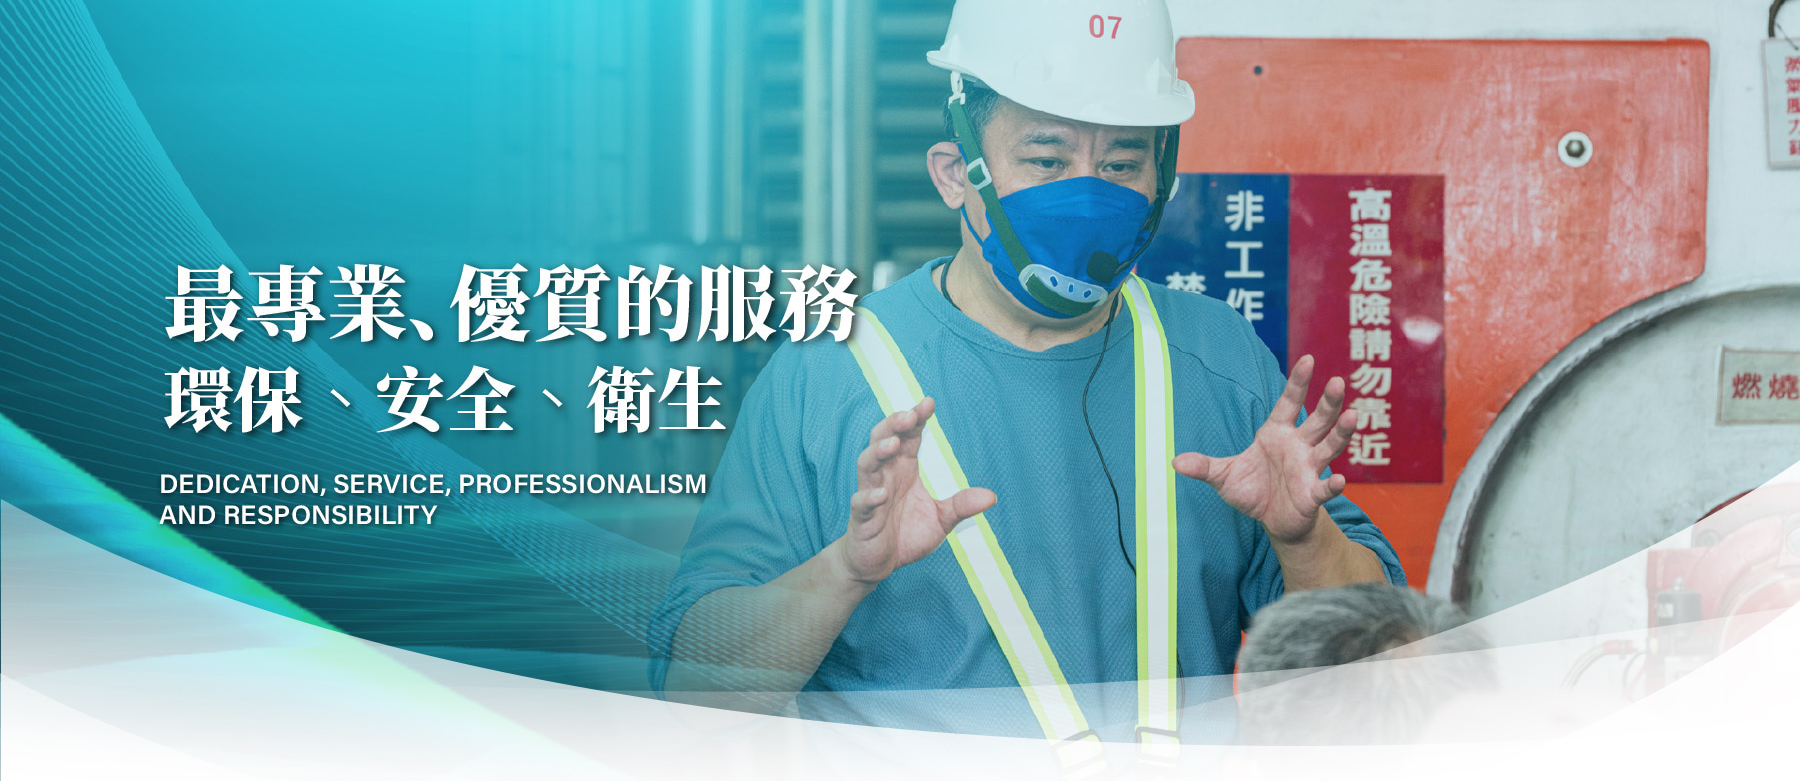 台灣省工商安全衛生協會